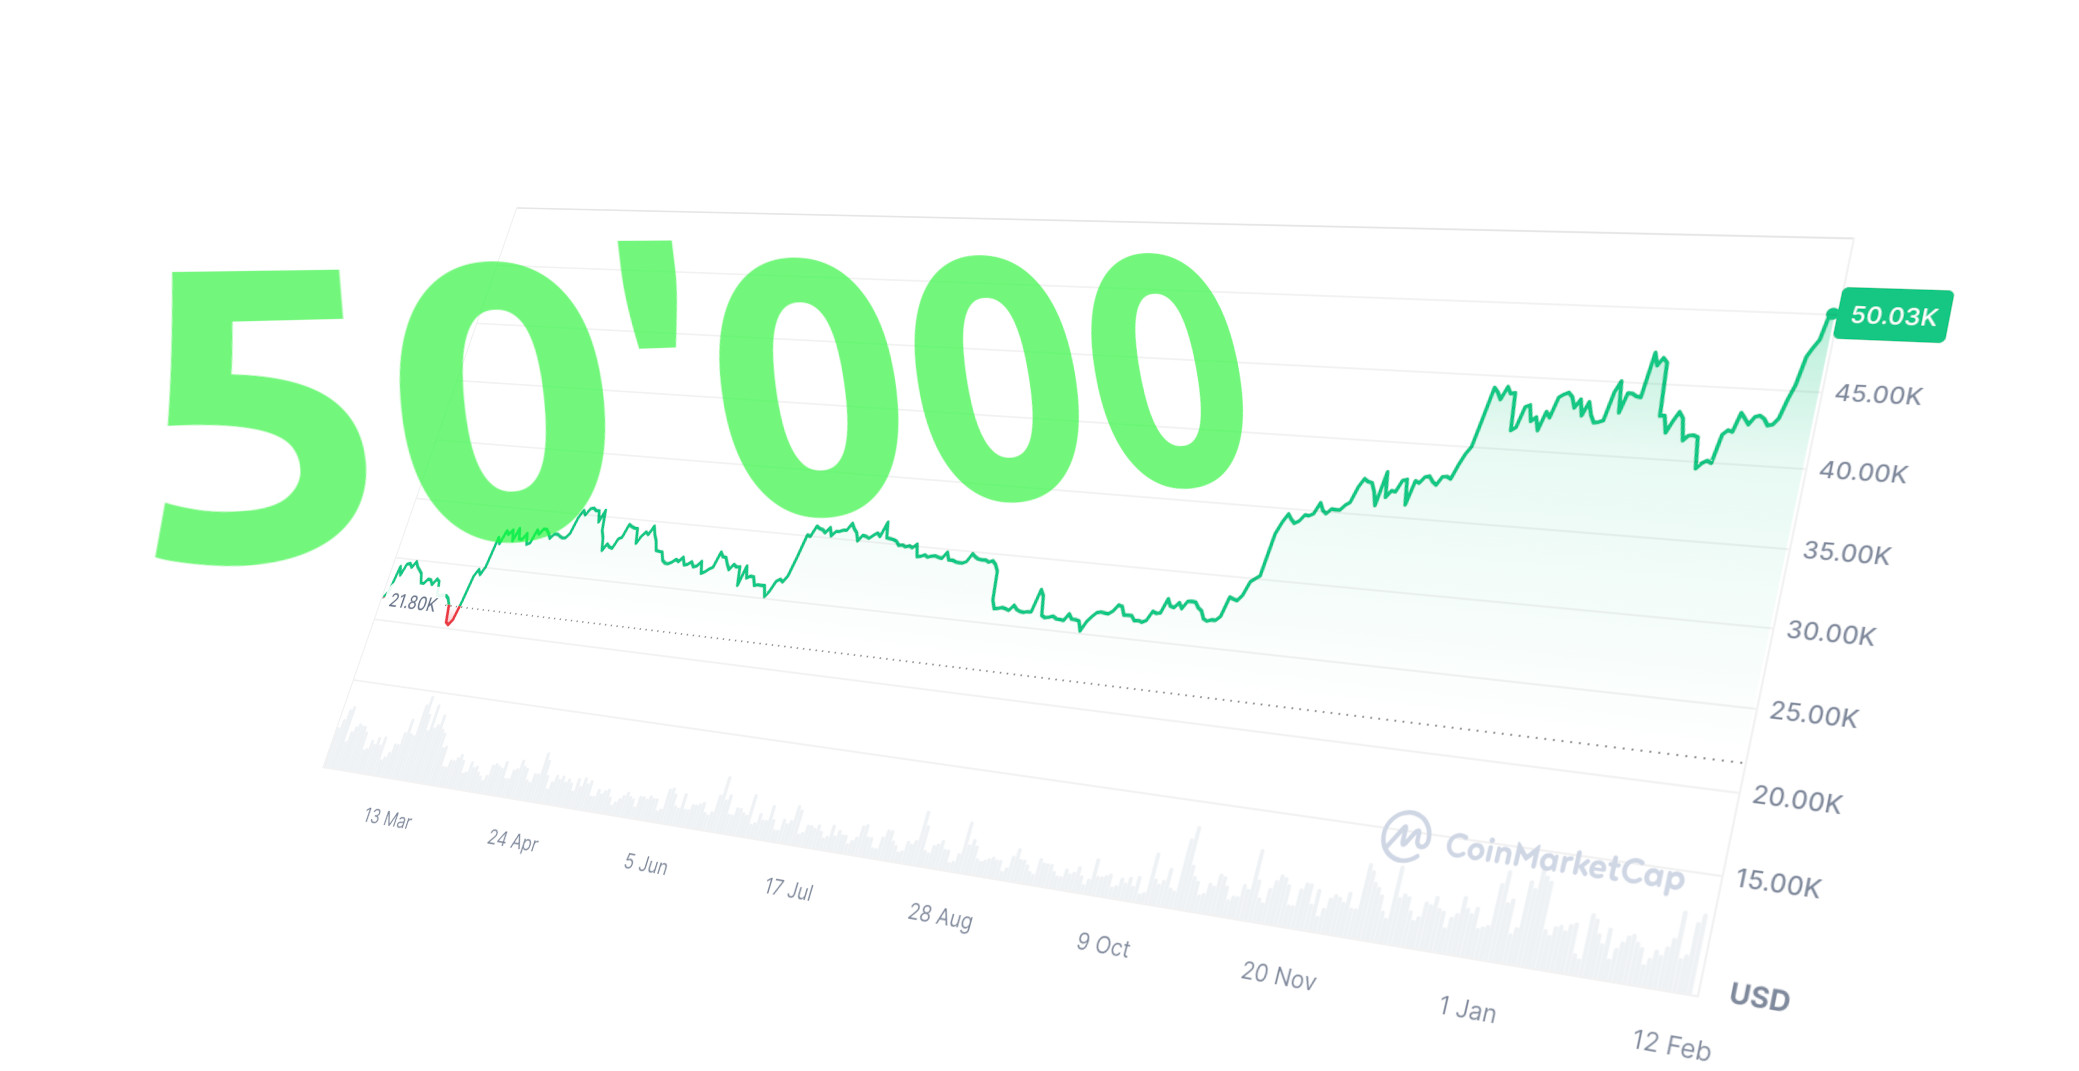 Bitcoin-Preis auf 50'000. Der Börsenwert aller Bitcoins liegt nun bei knapp einer Milliarde Dollar.